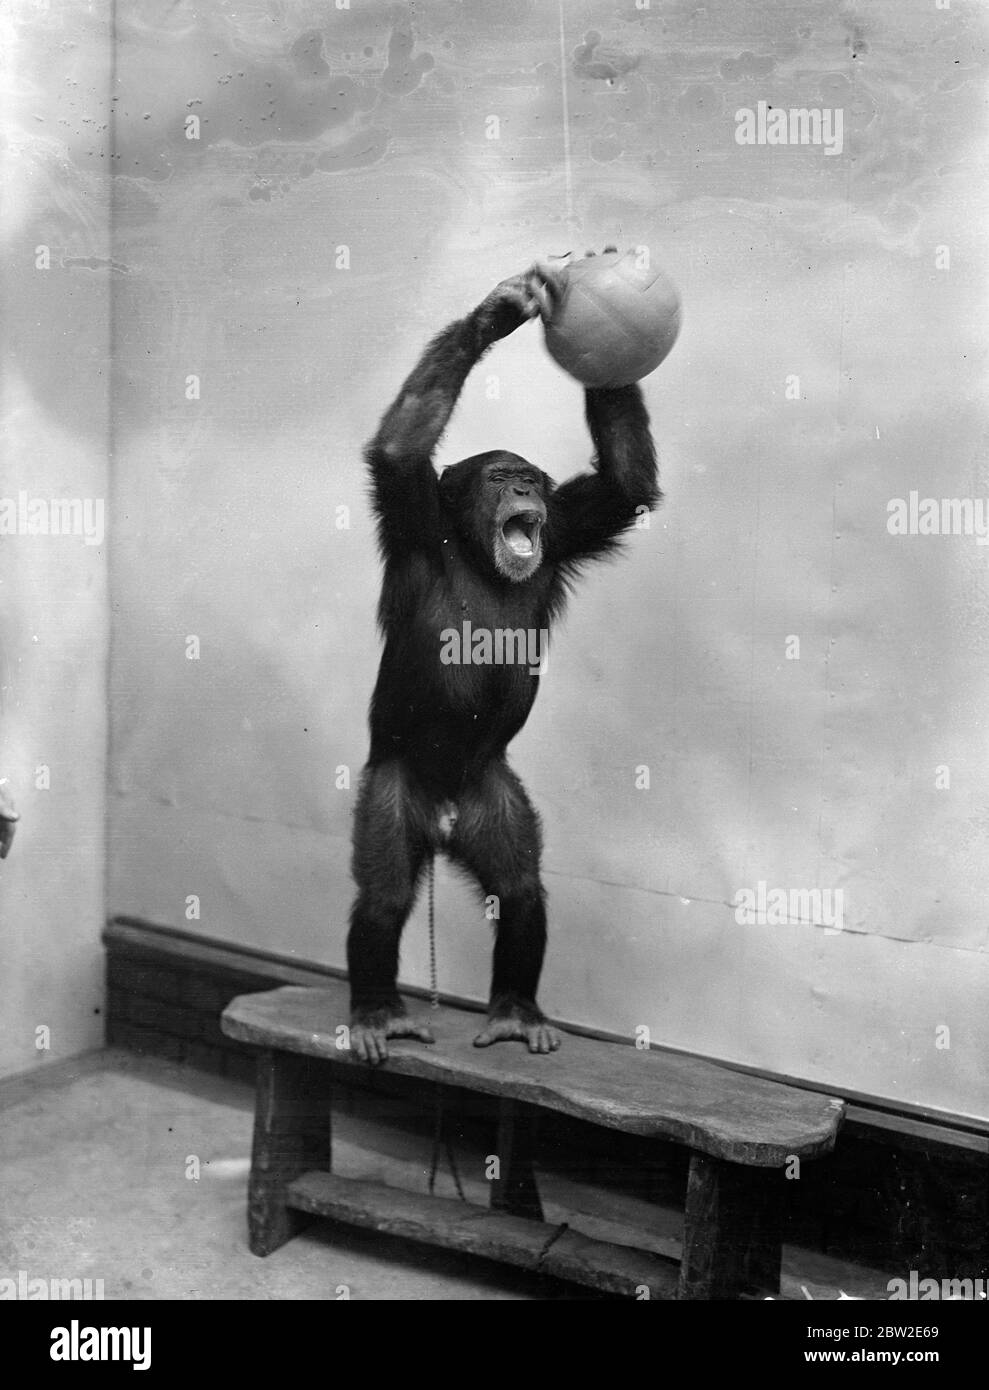 La saison de football a été officiellement inaugurée au zoo de Londres, où Peter, le chimpanzé, le fondateur du football dans le coin des animaux. Peter s'est lancé. 17 août 1937. Banque D'Images